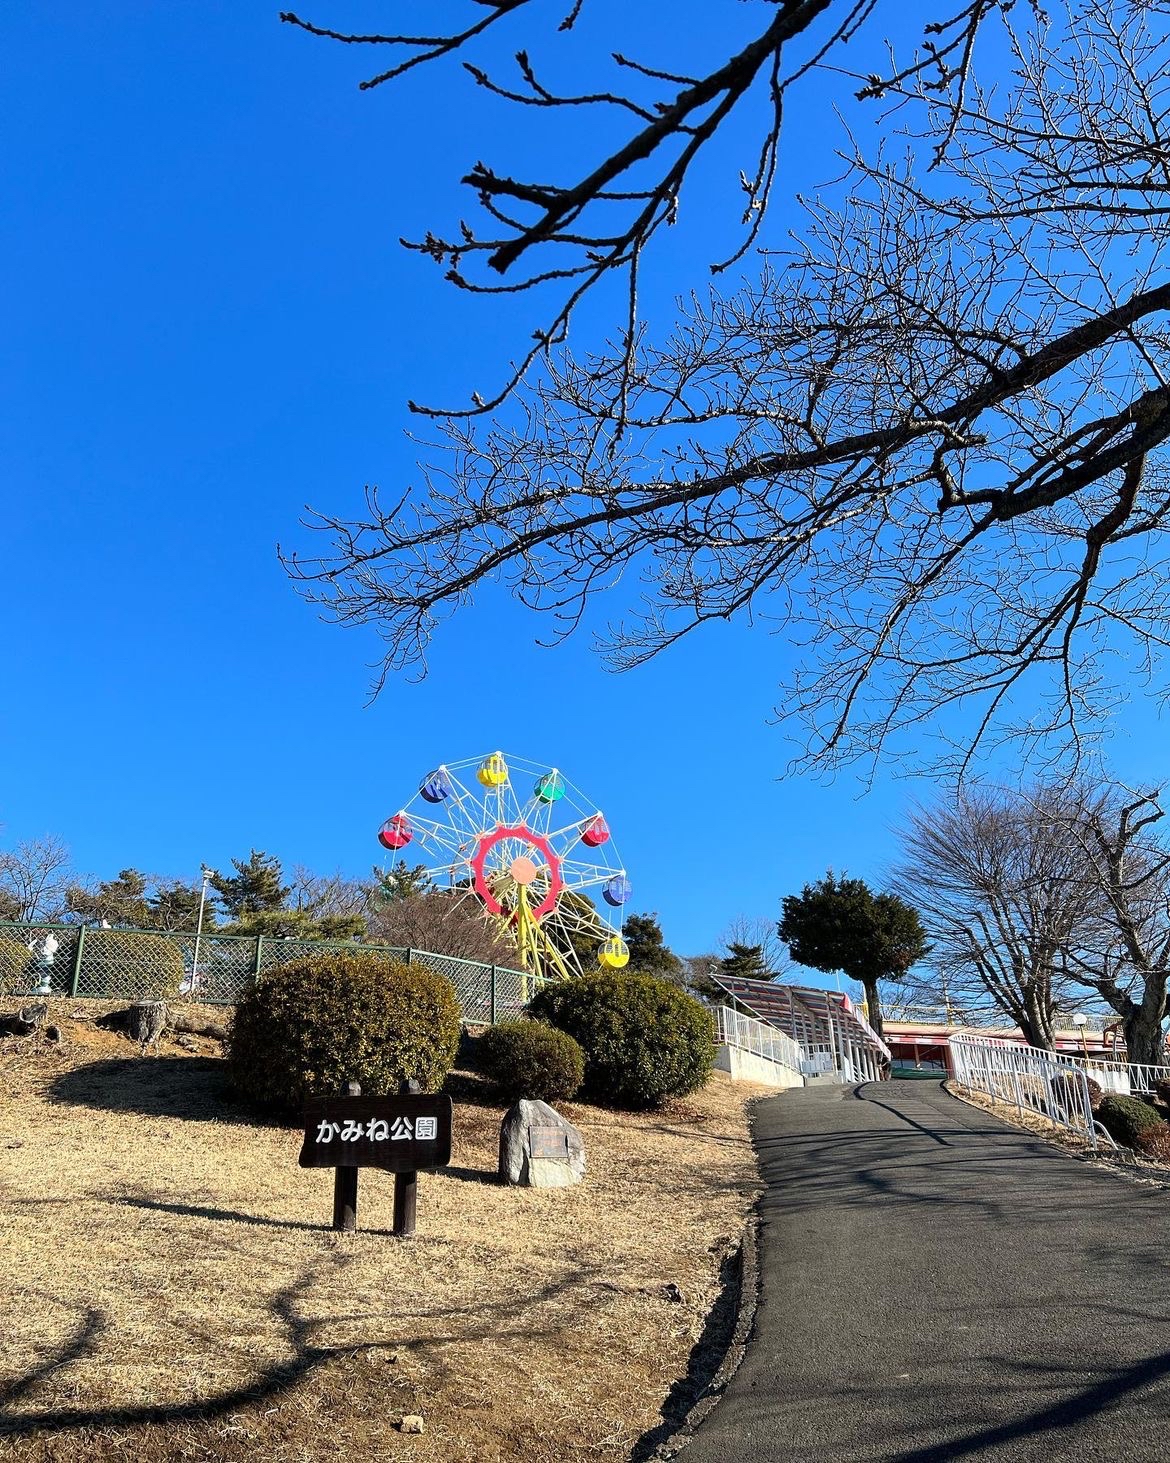 #被低估的遛娃宝地   日立かみね动物园位于茨城县日立市，是一个综合性动物园，提供给访客们亲近动物、